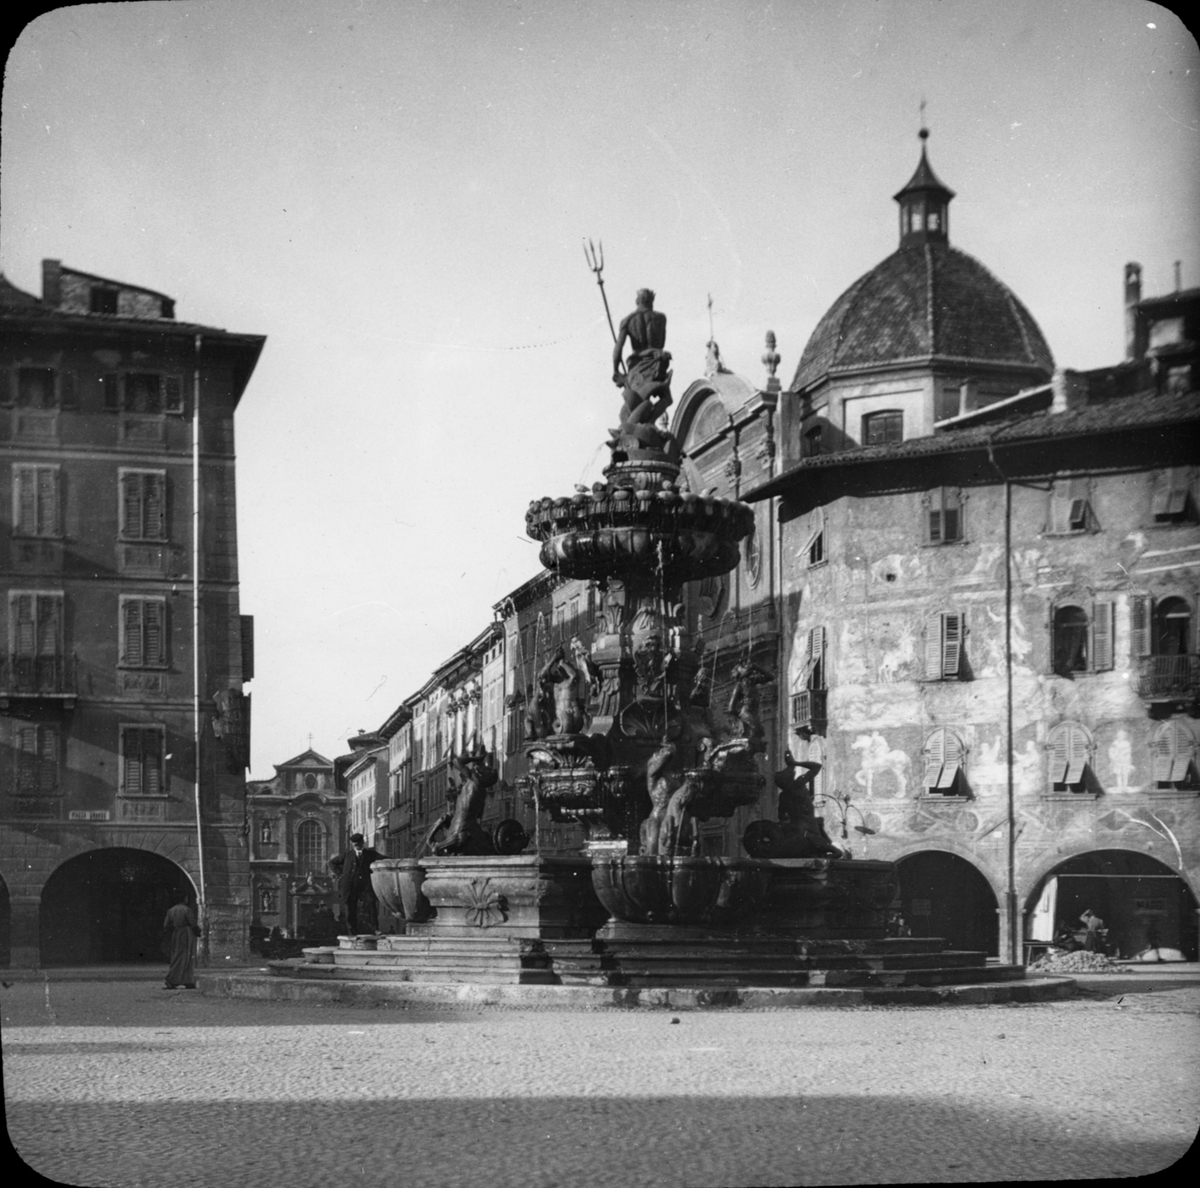 Skioptikonbild med motiv av Neptuns brunn, Fontana del Nettuno, på Piazza Duomo i Trento.
Bilden har förvarats i kartong märkt: Resan 1909. Trient 7. N:20.. Text på bild: "Via Largo".